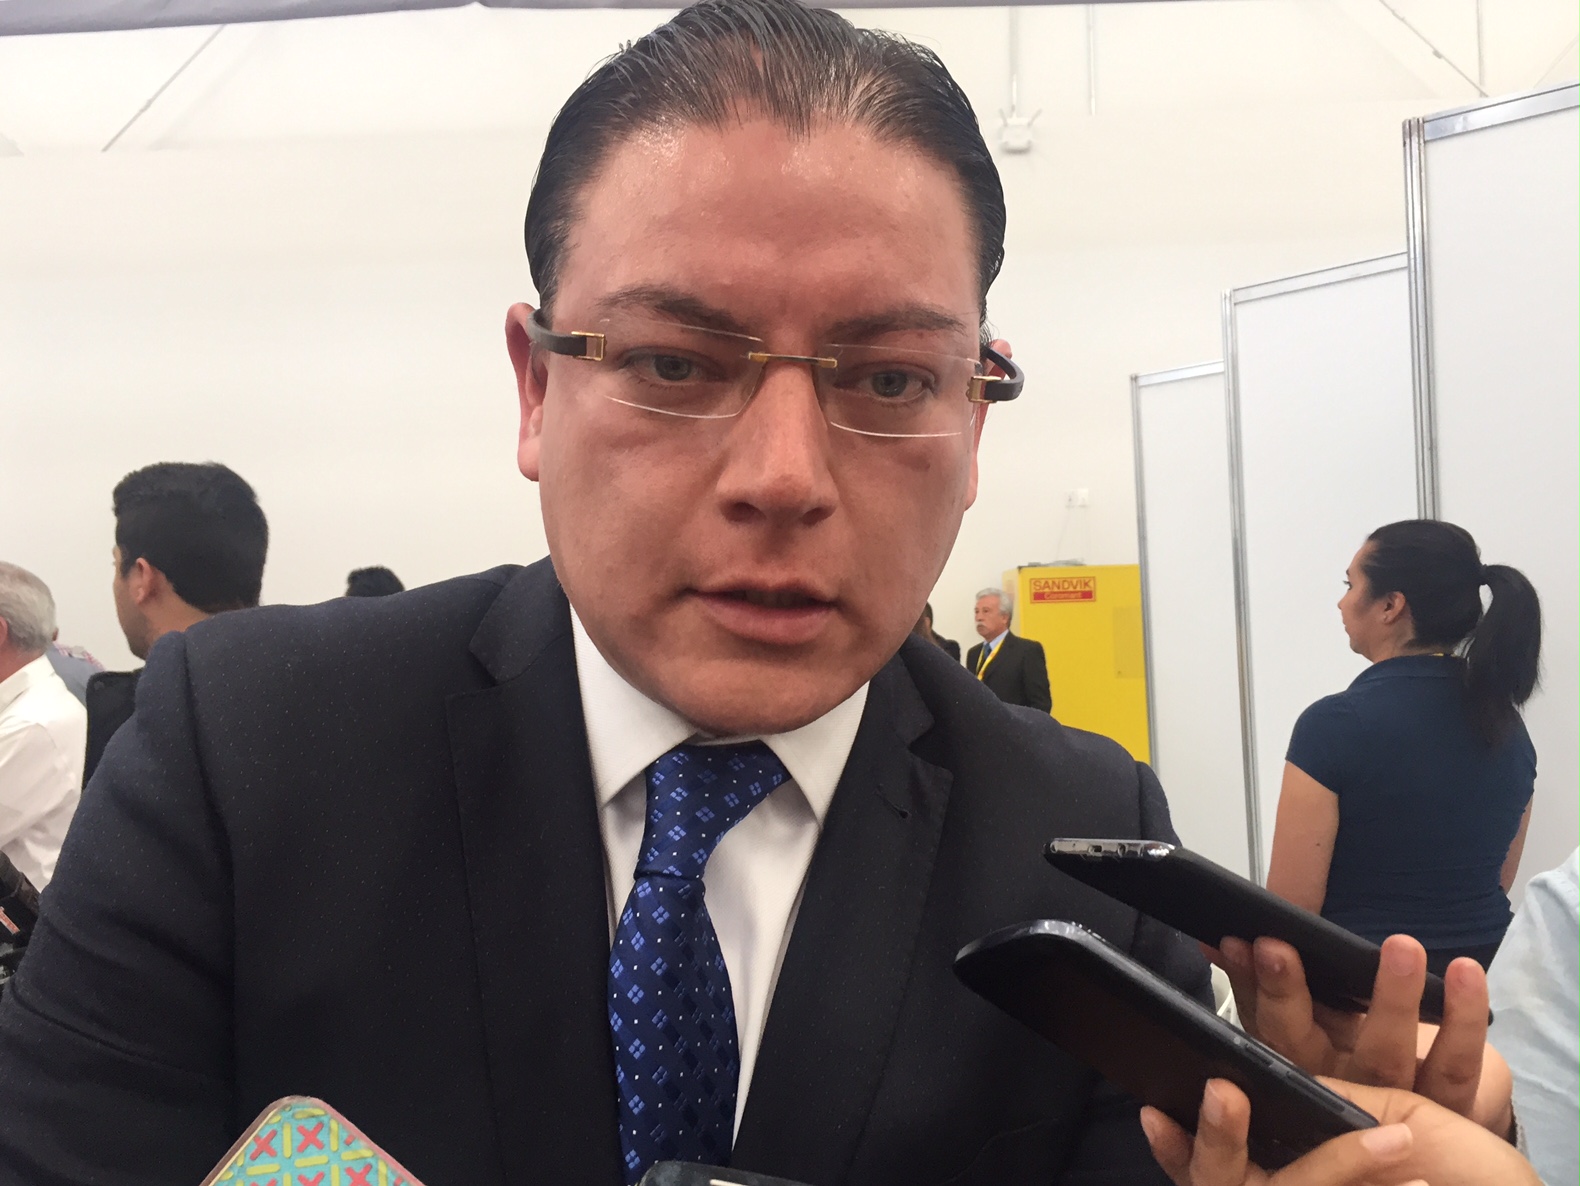  Negociaciones del SUPAUAQ serán llevadas por comité de Saúl García: José Luis Aguilera